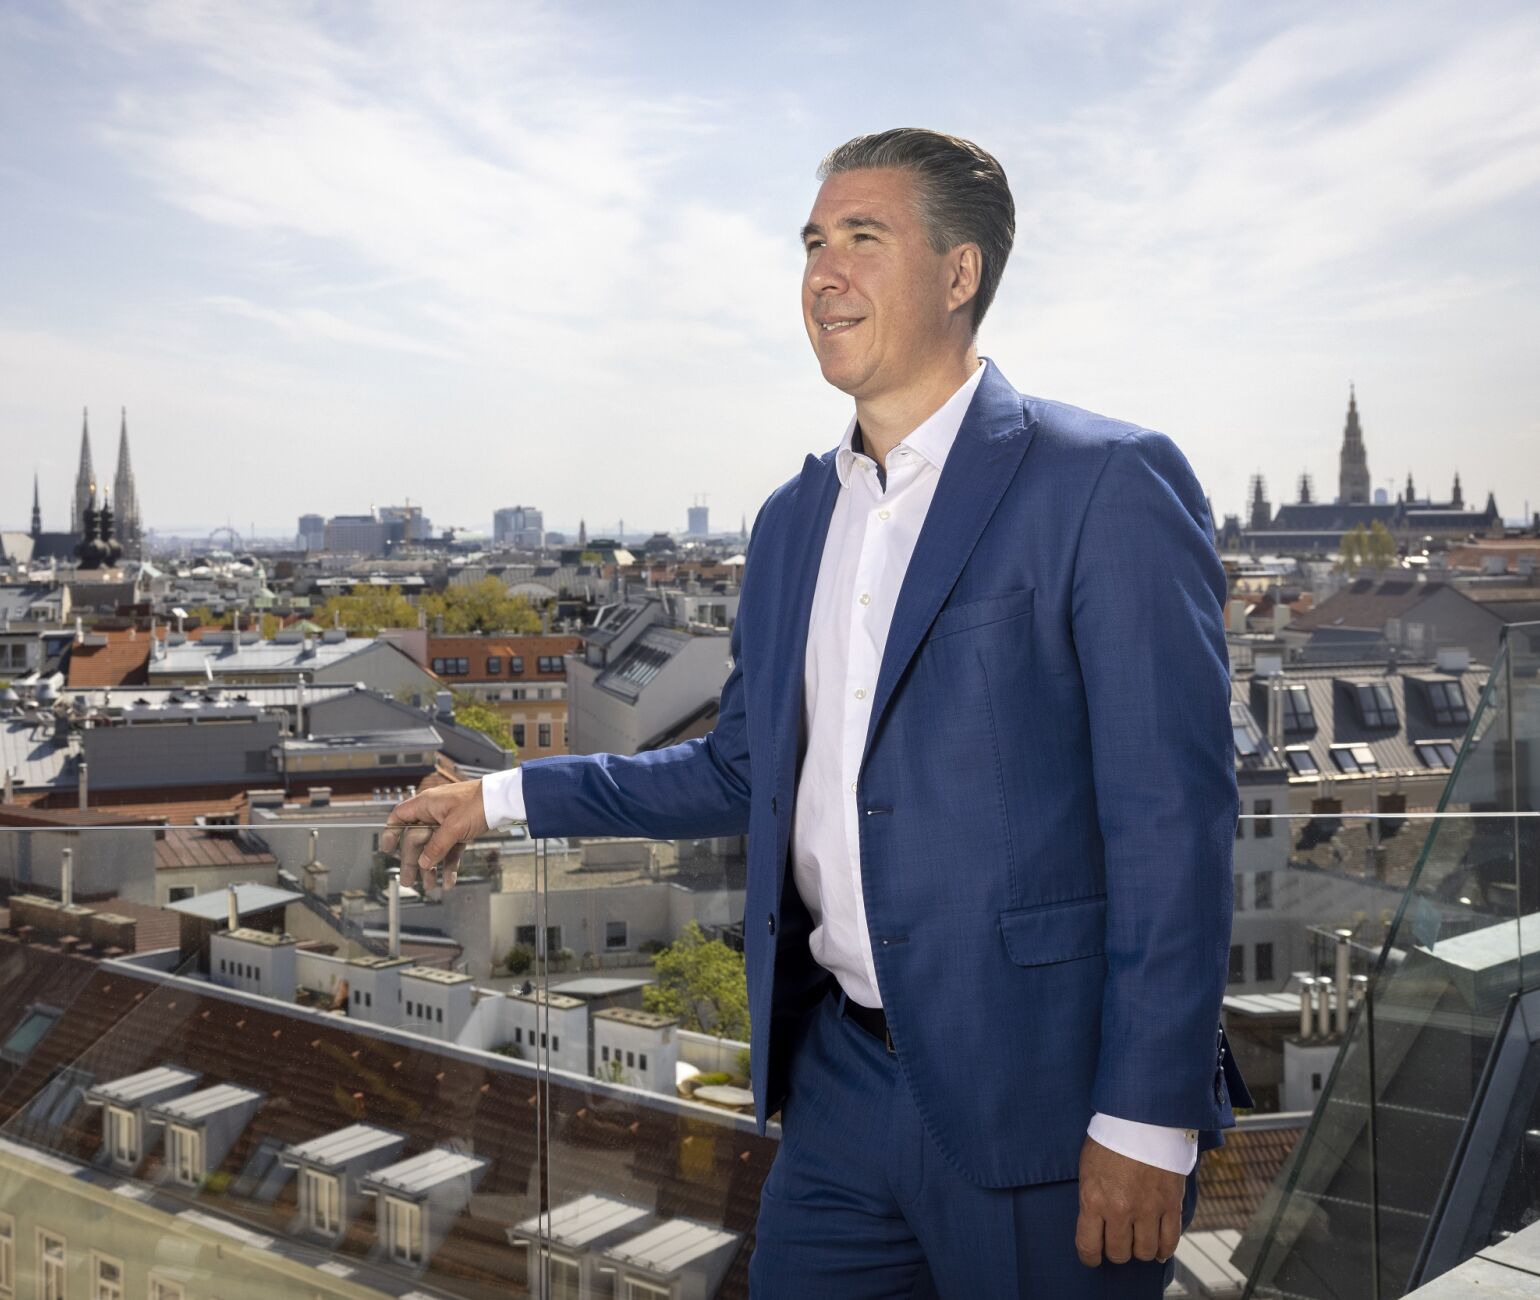 Michael Schmidt, Geschäftsführer 3SI Immogroup, will heuer über 250 Millionen € investieren